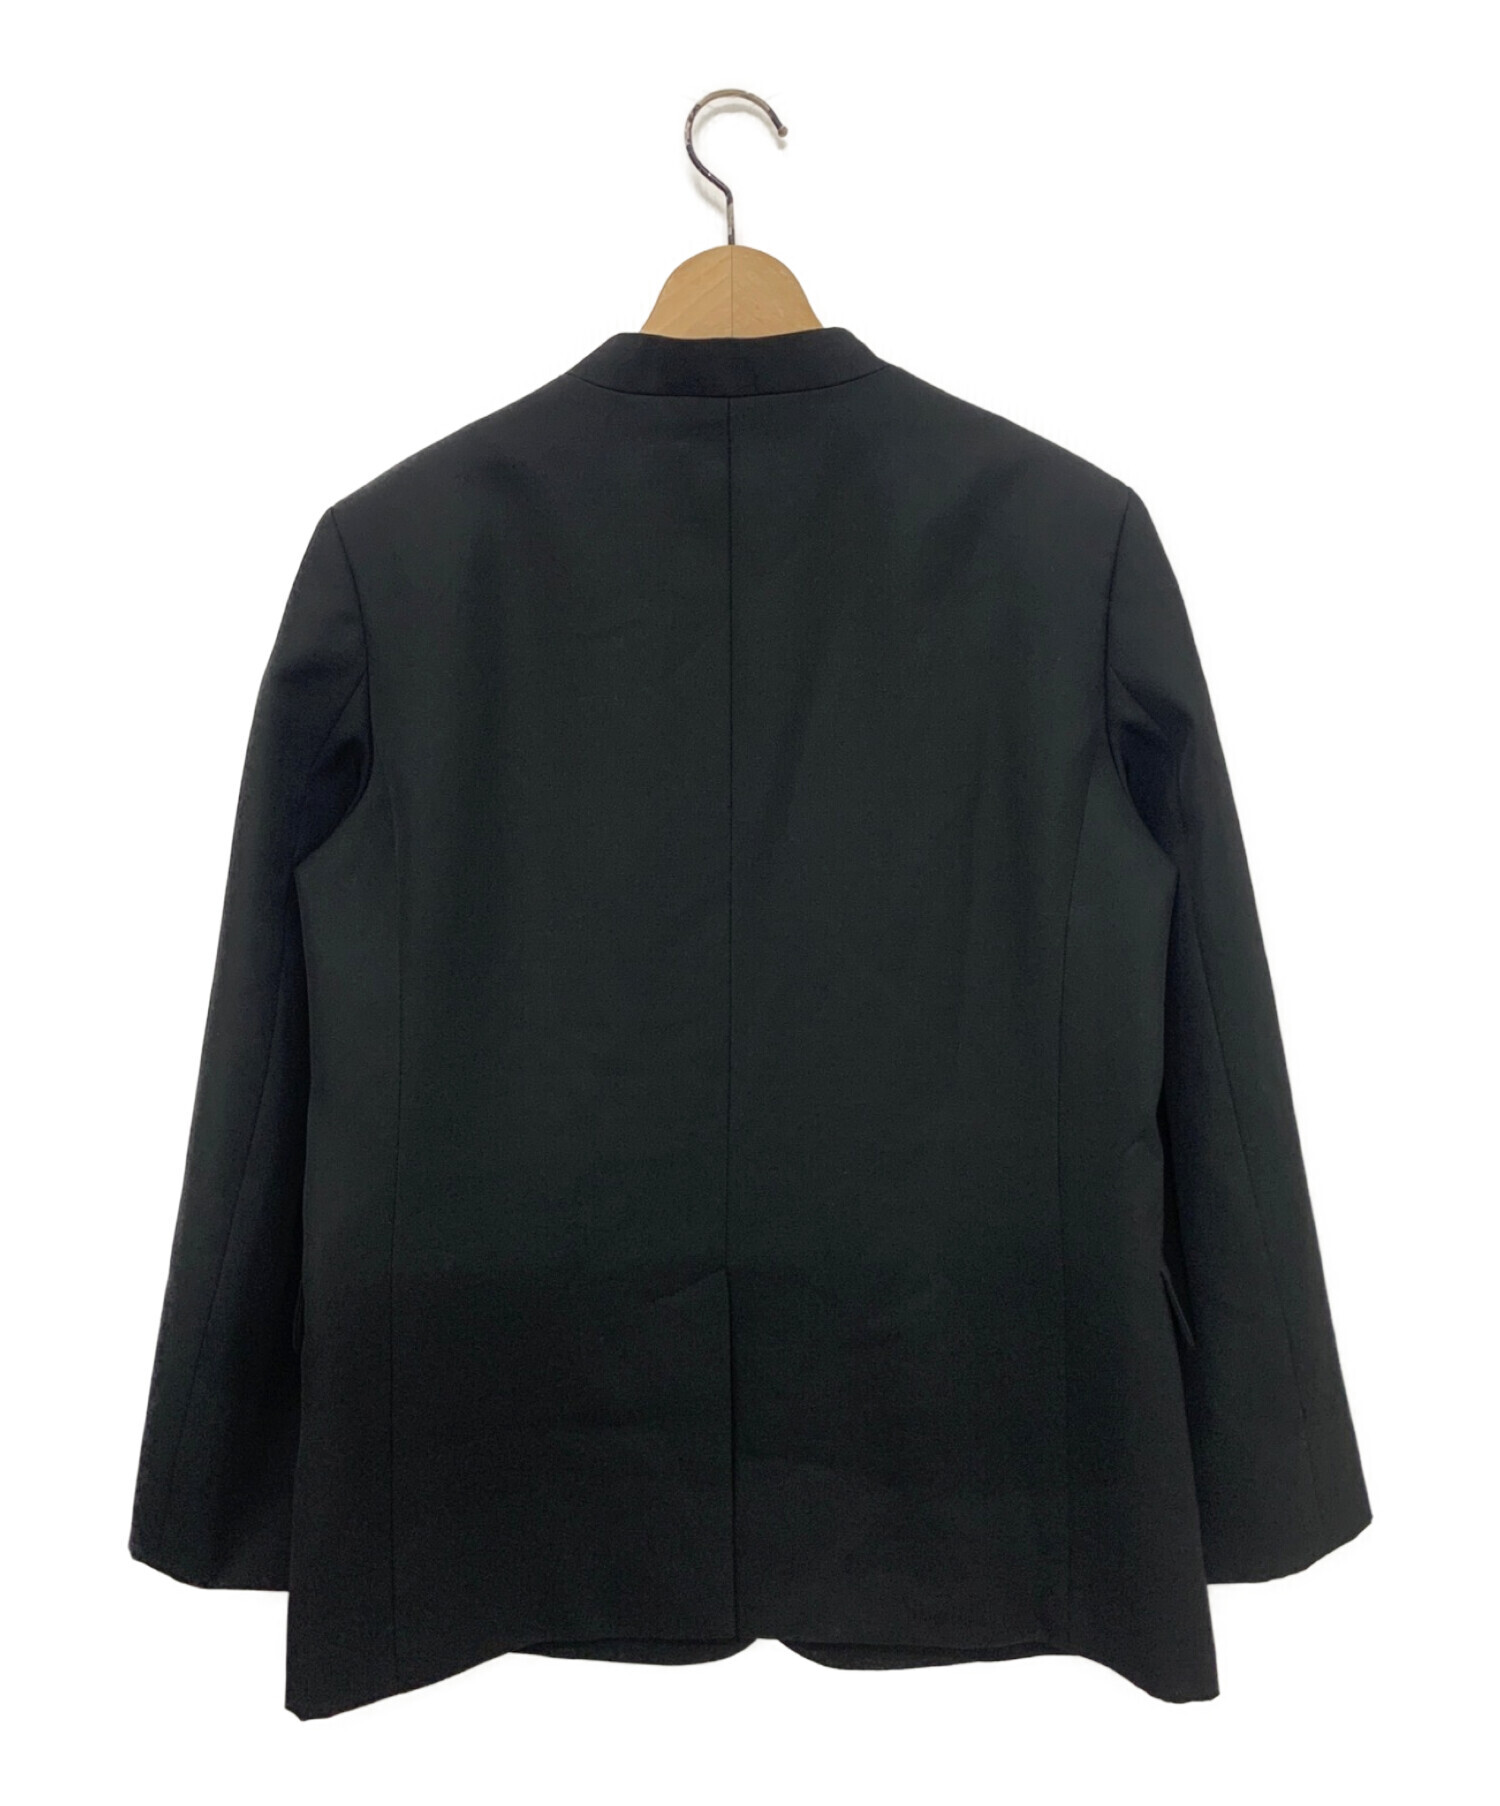 NAVE (ネイブ) ウールポリエステルツイル ジャケット ブラック サイズ:1